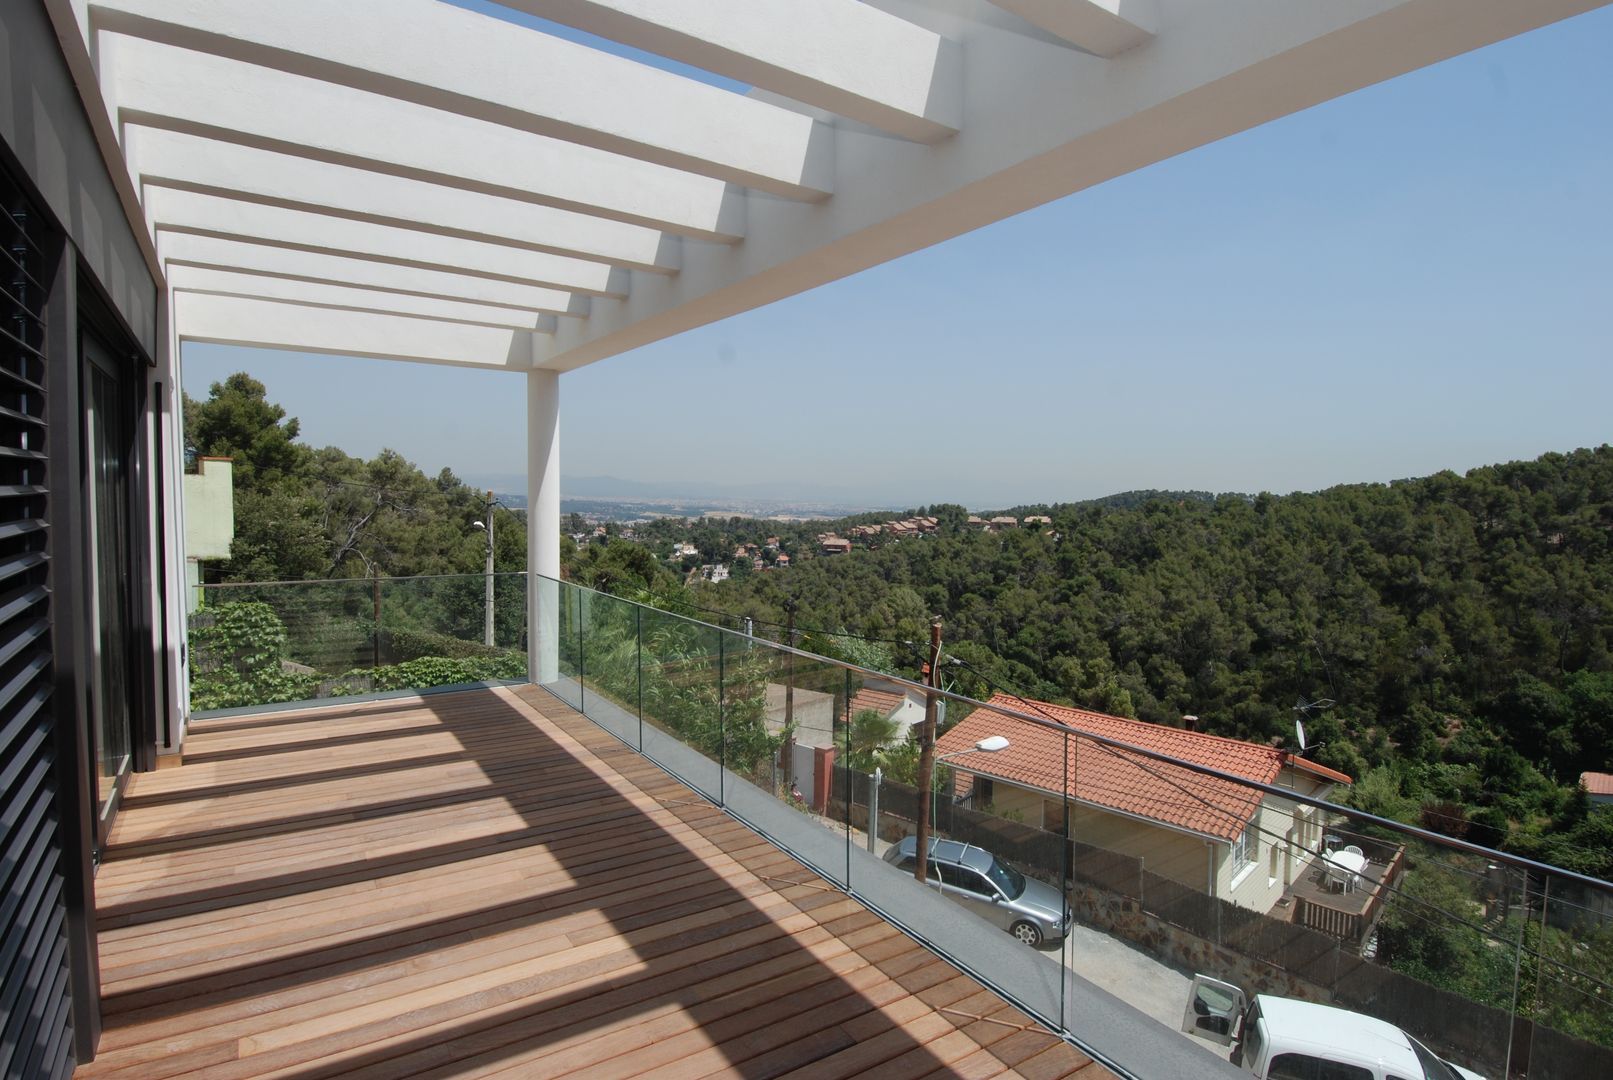 Terraza orientada a este FG ARQUITECTES Balcones y terrazas modernos